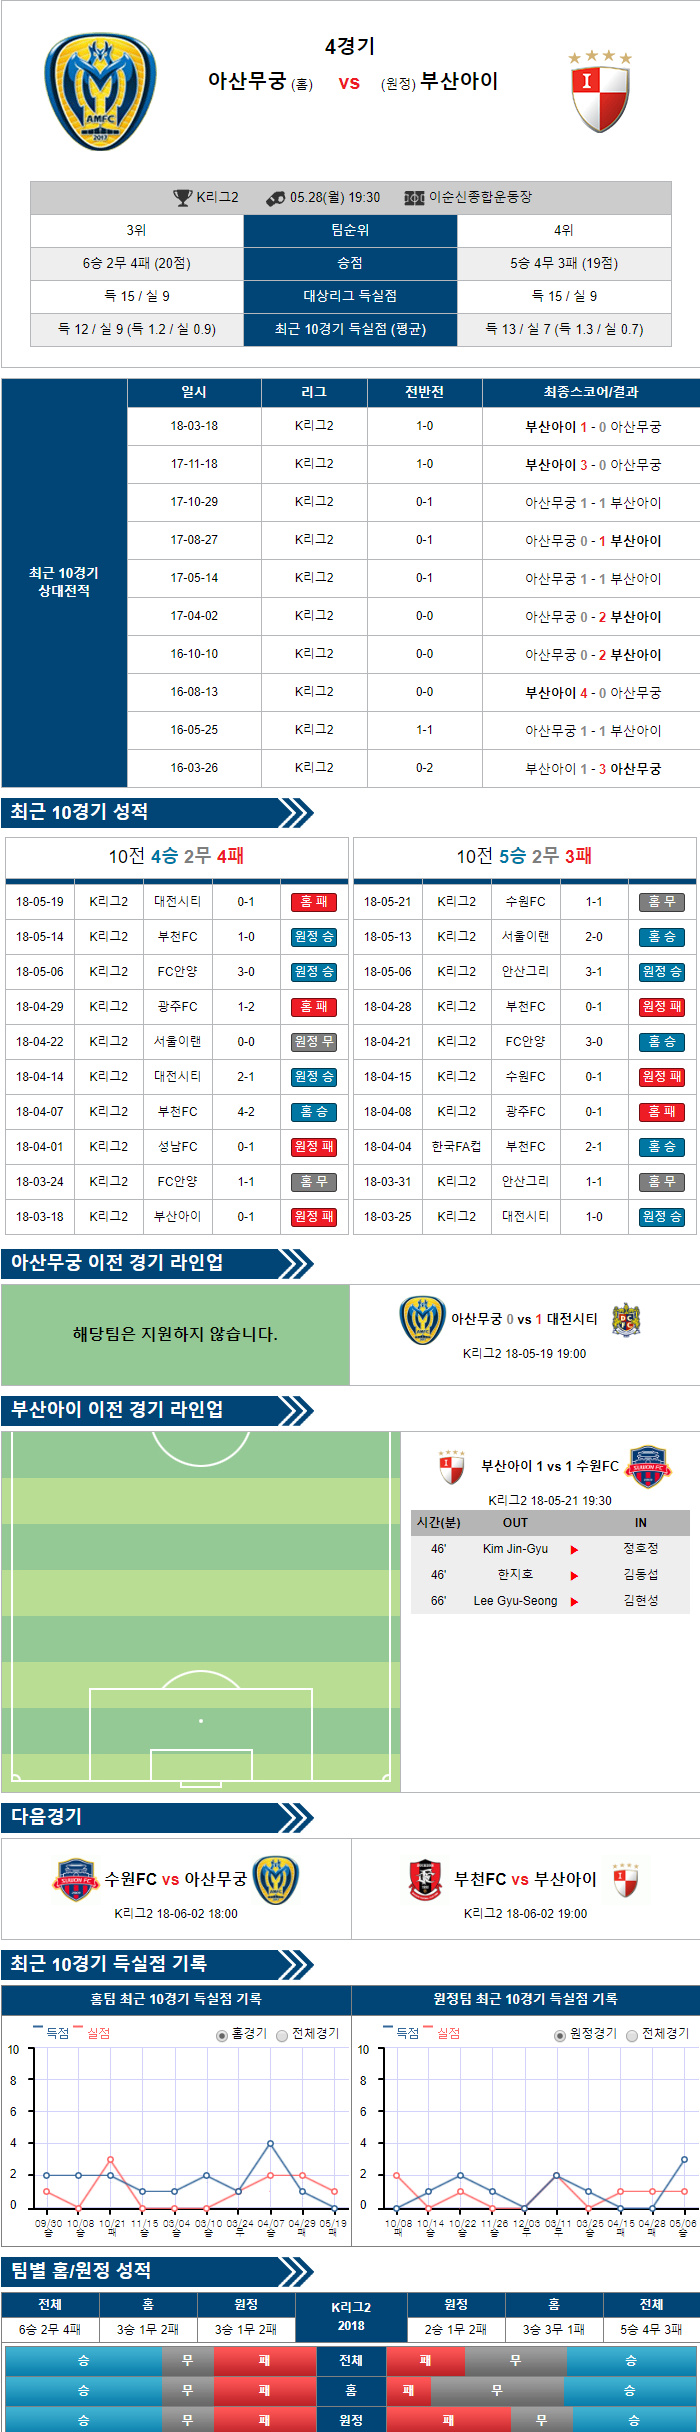 5-28 [K리그챌린지] 19:30 축구분석 아산무궁화 vs 부산아이파크